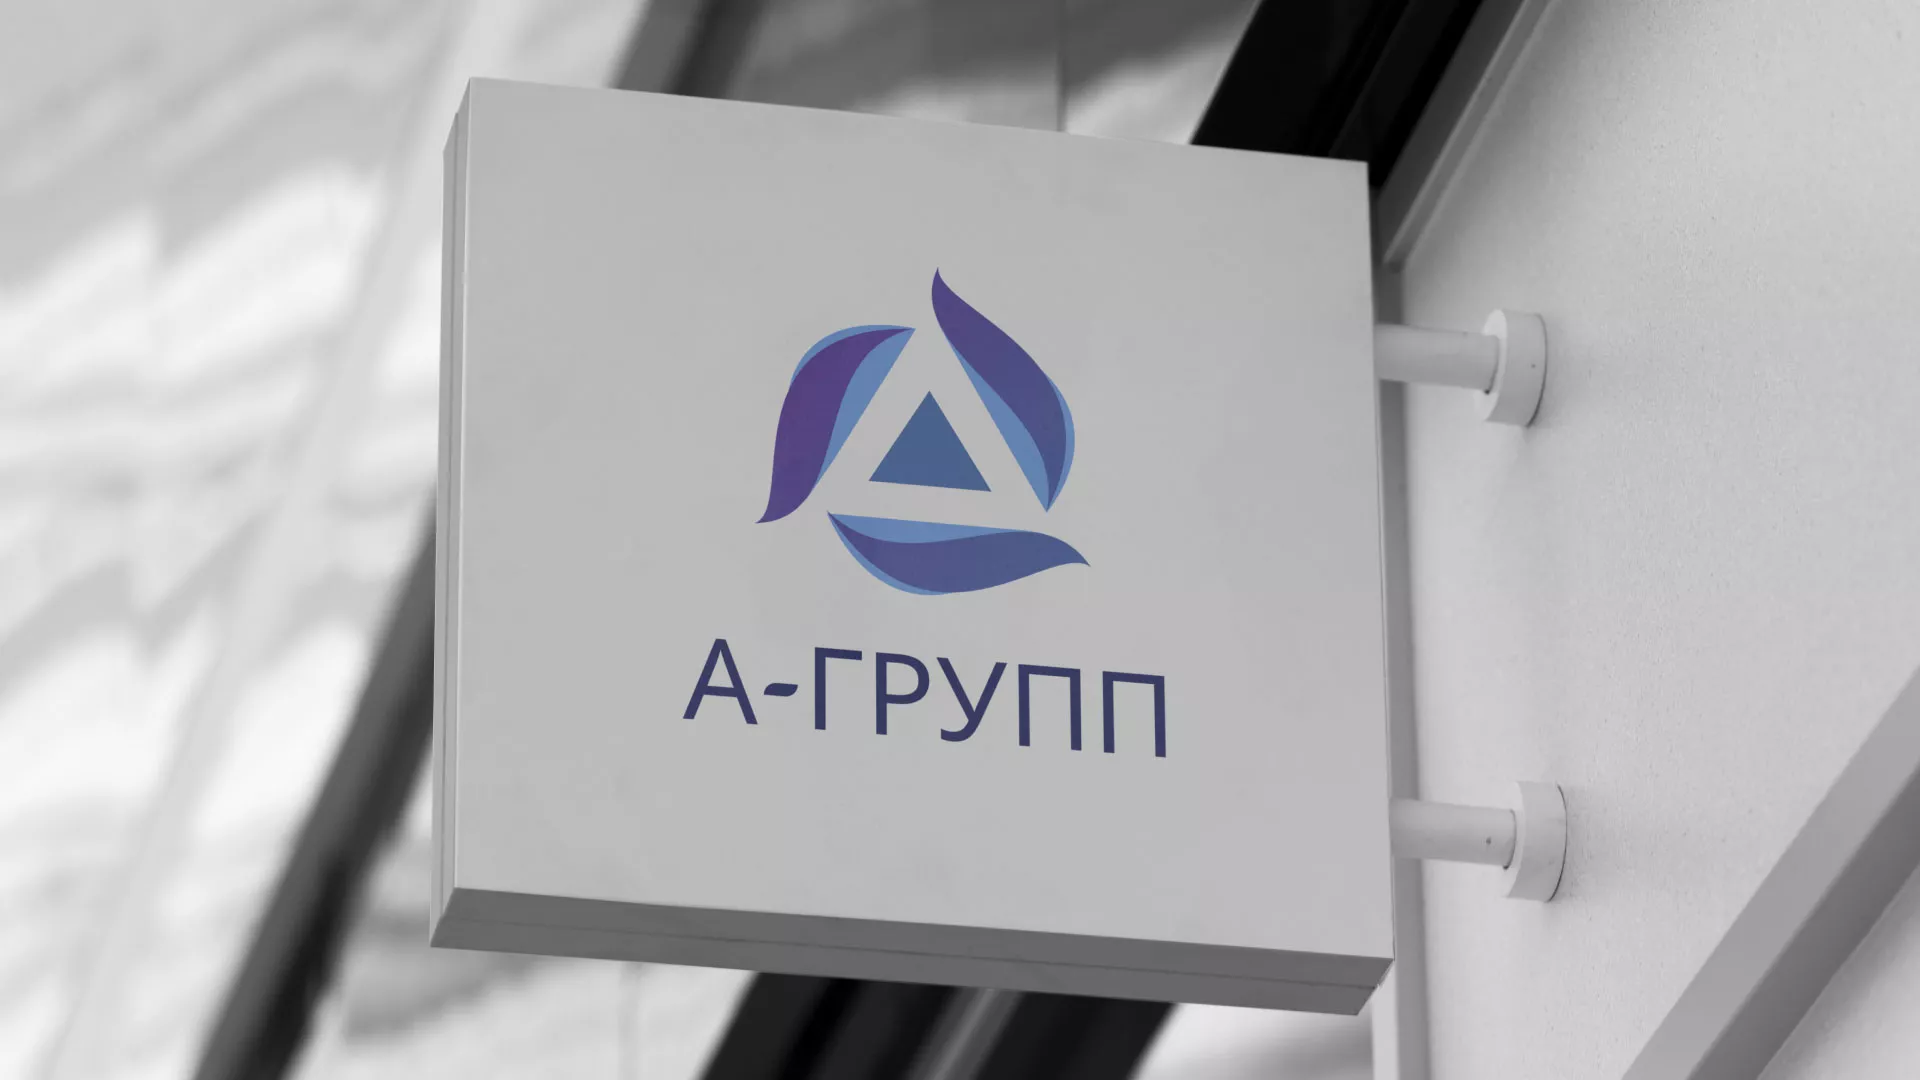 Создание логотипа компании «А-ГРУПП» в Павлово